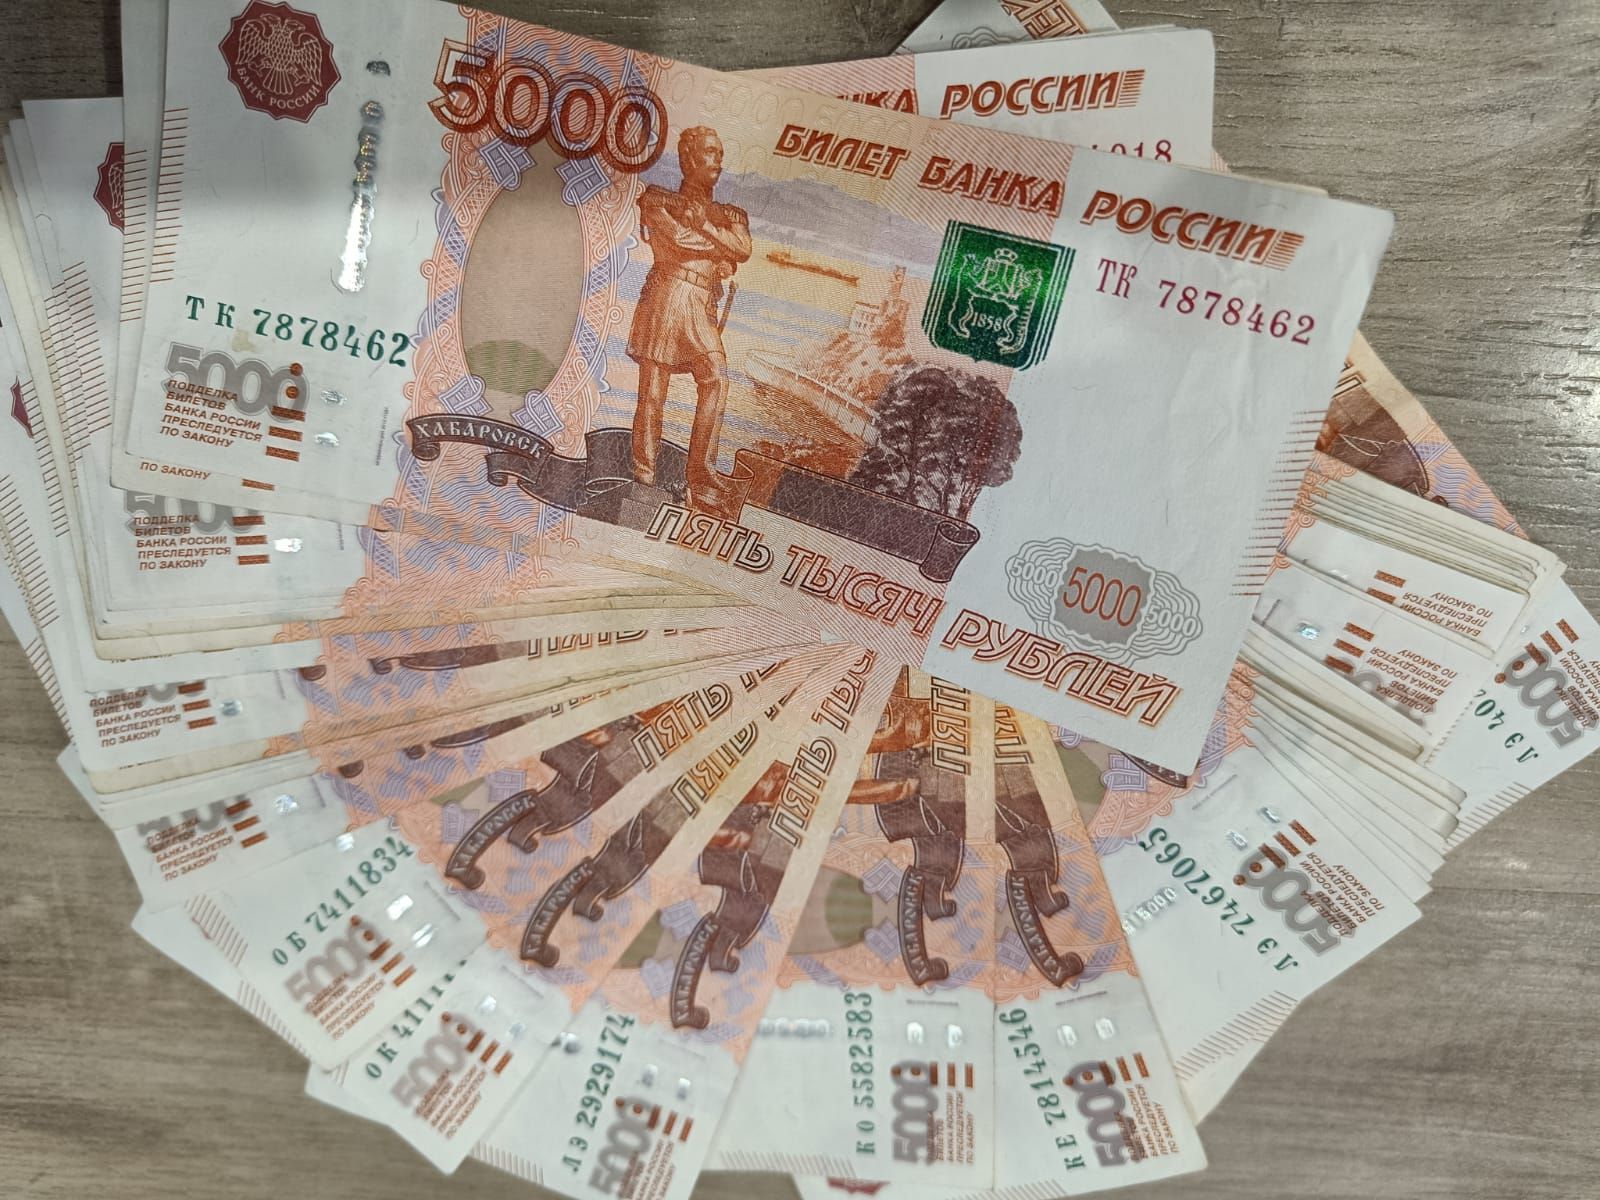 Амурчанин выплатил семье погибшего оппонента 200 тыс. рублей